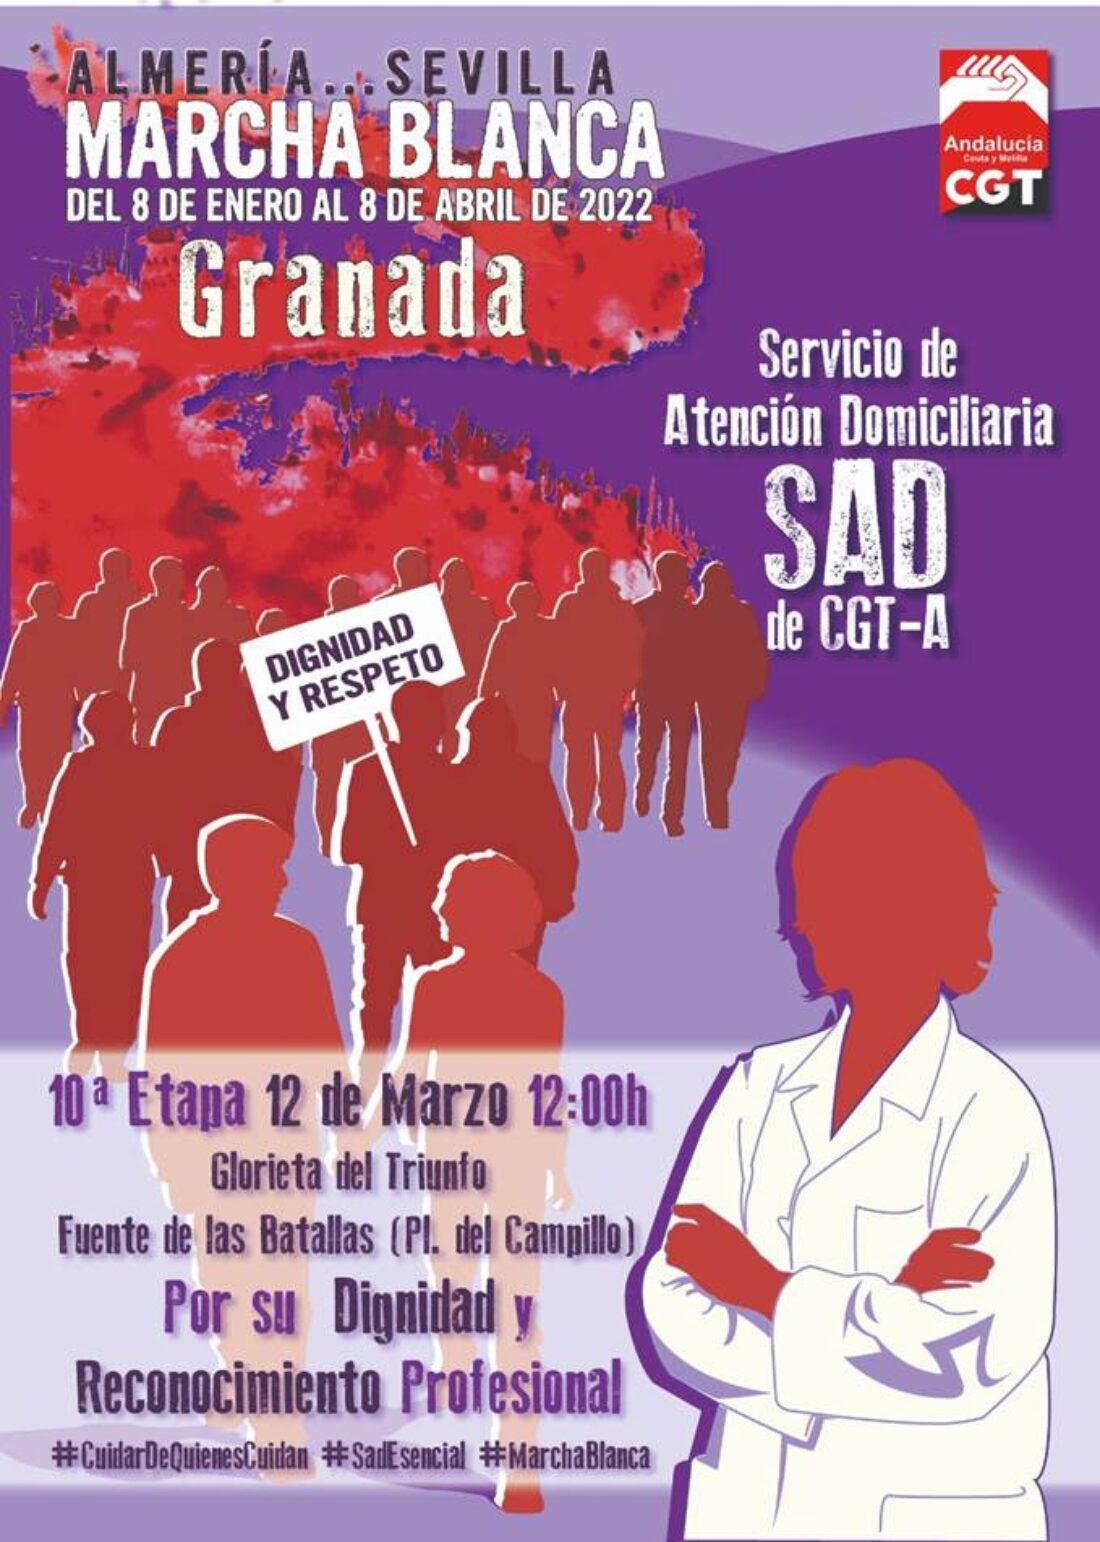 La Marcha Blanca andaluza del Servicio de Atención Domiciliaria (SAD) recorrerá Granada el próximo sábado